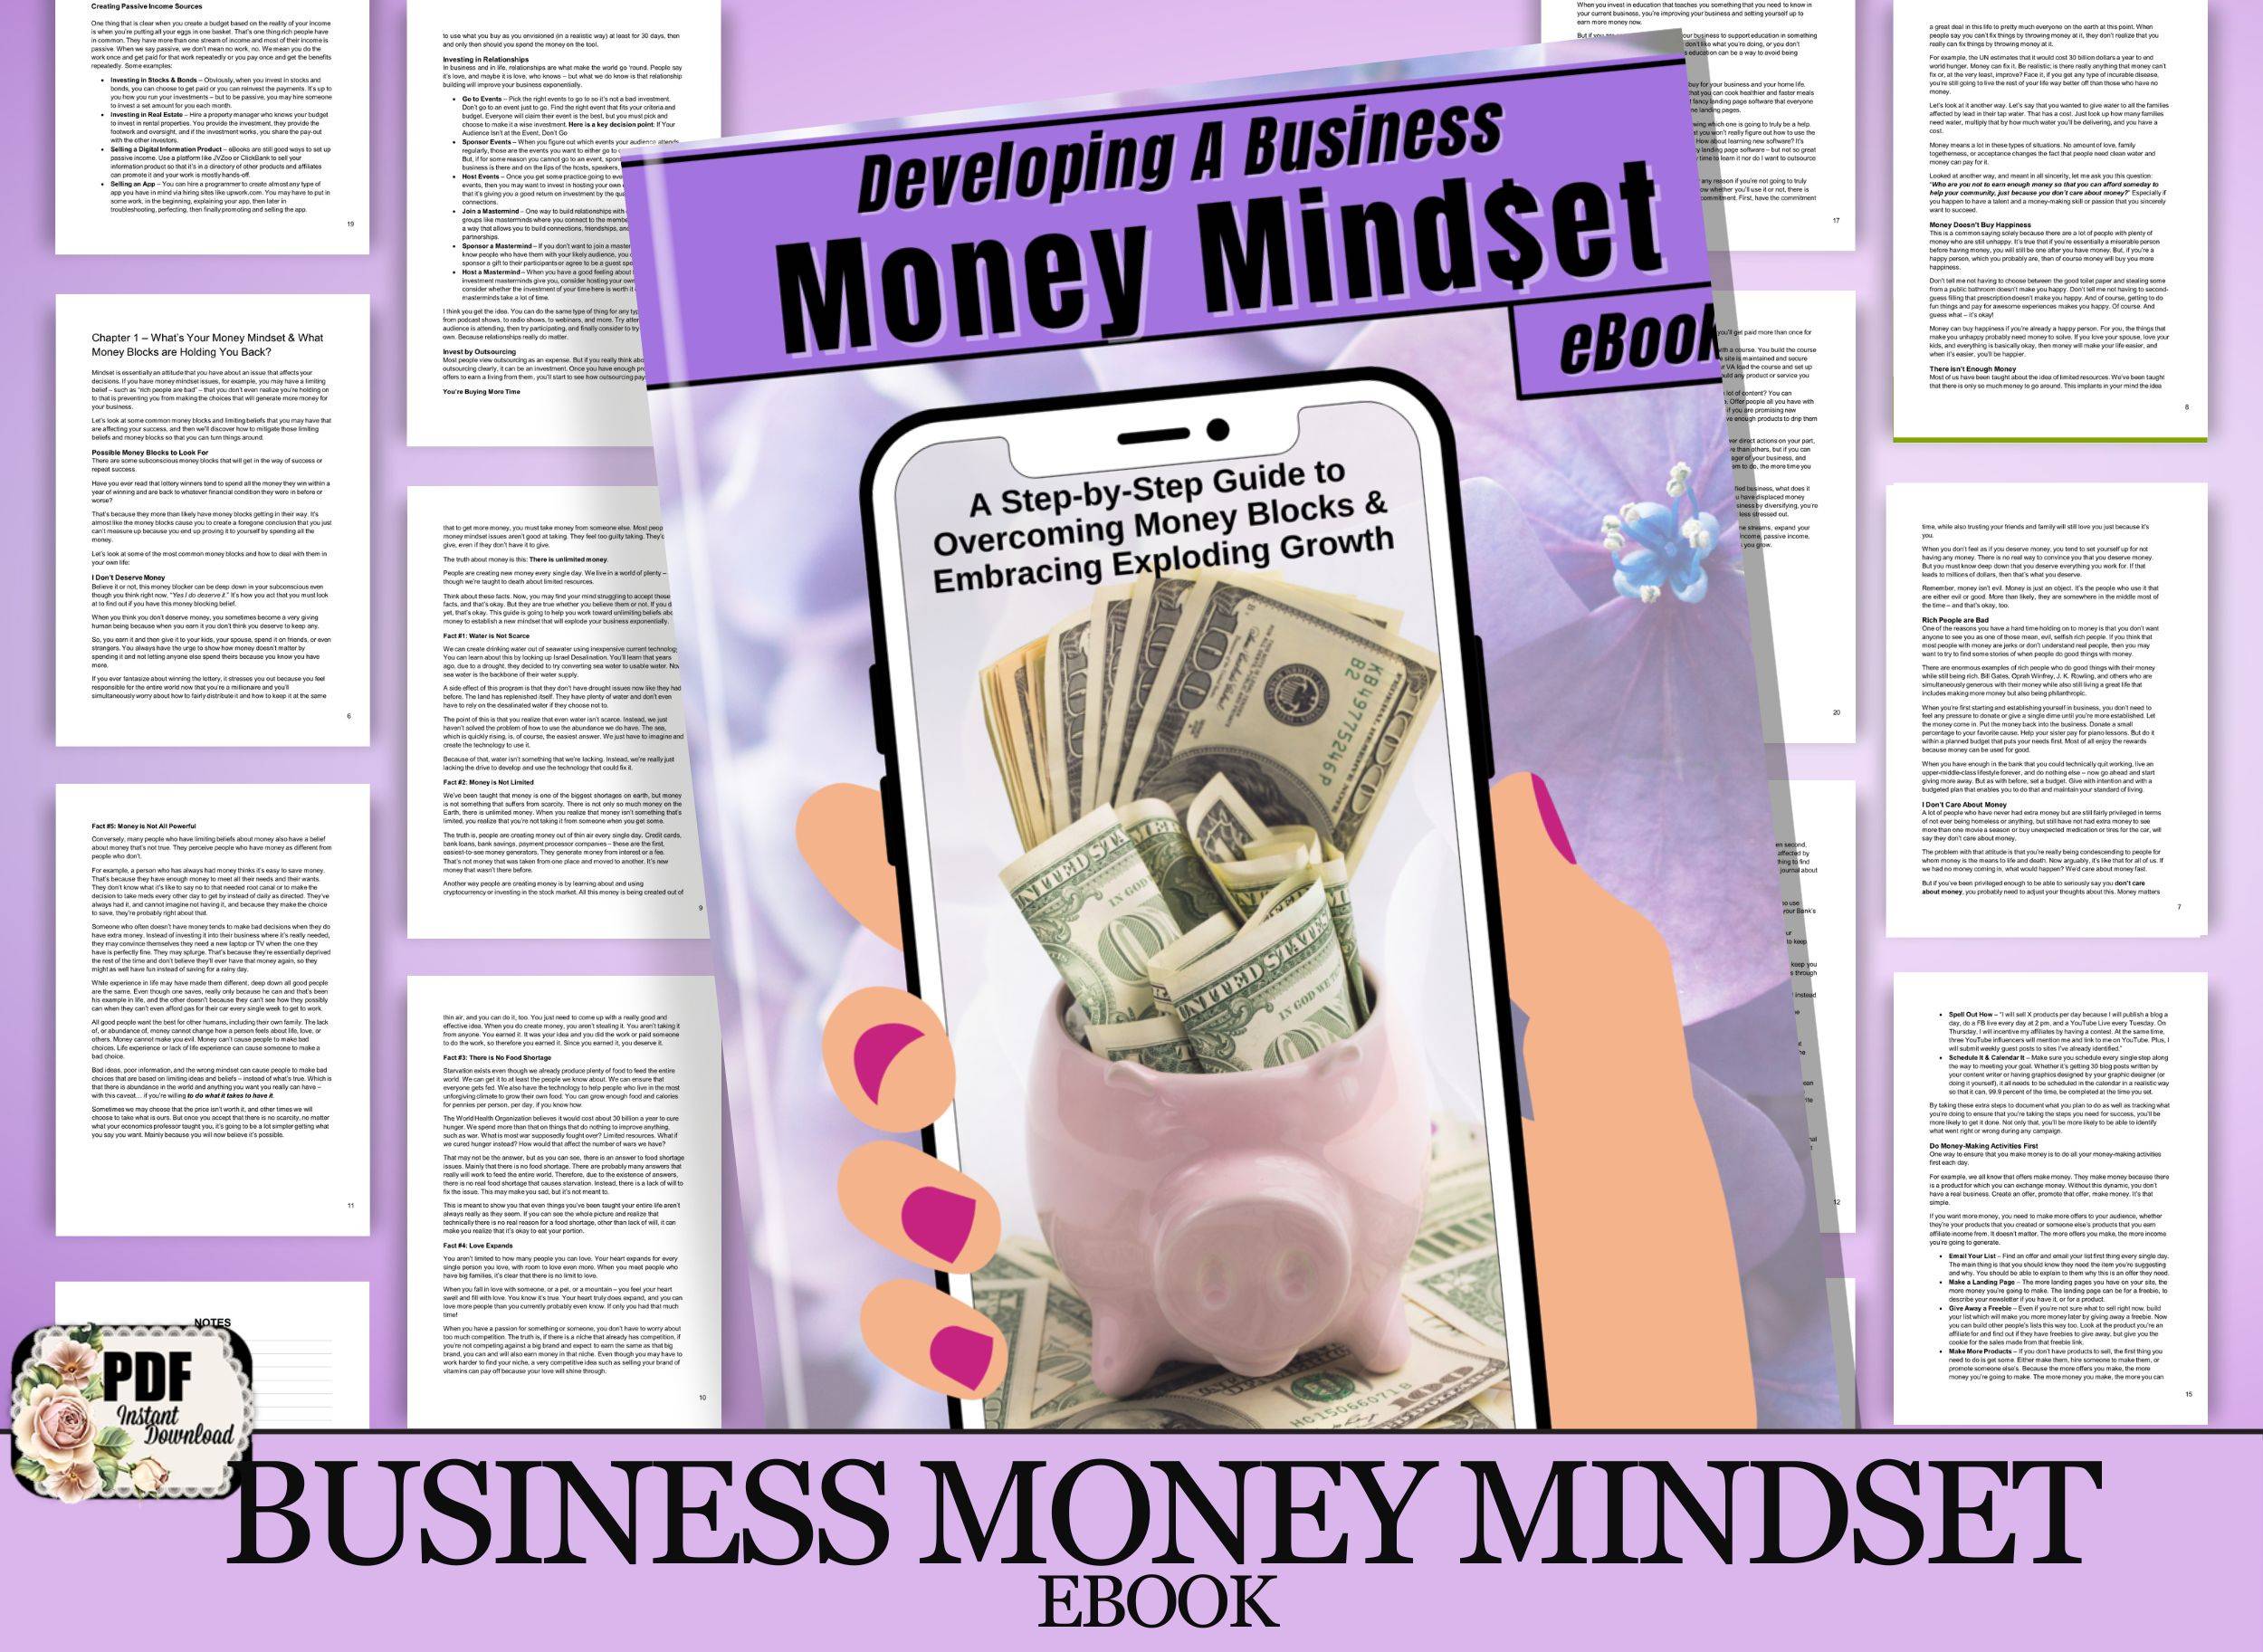 DEVELOPING A BUSINESS MONEY MINDSET EBOOK